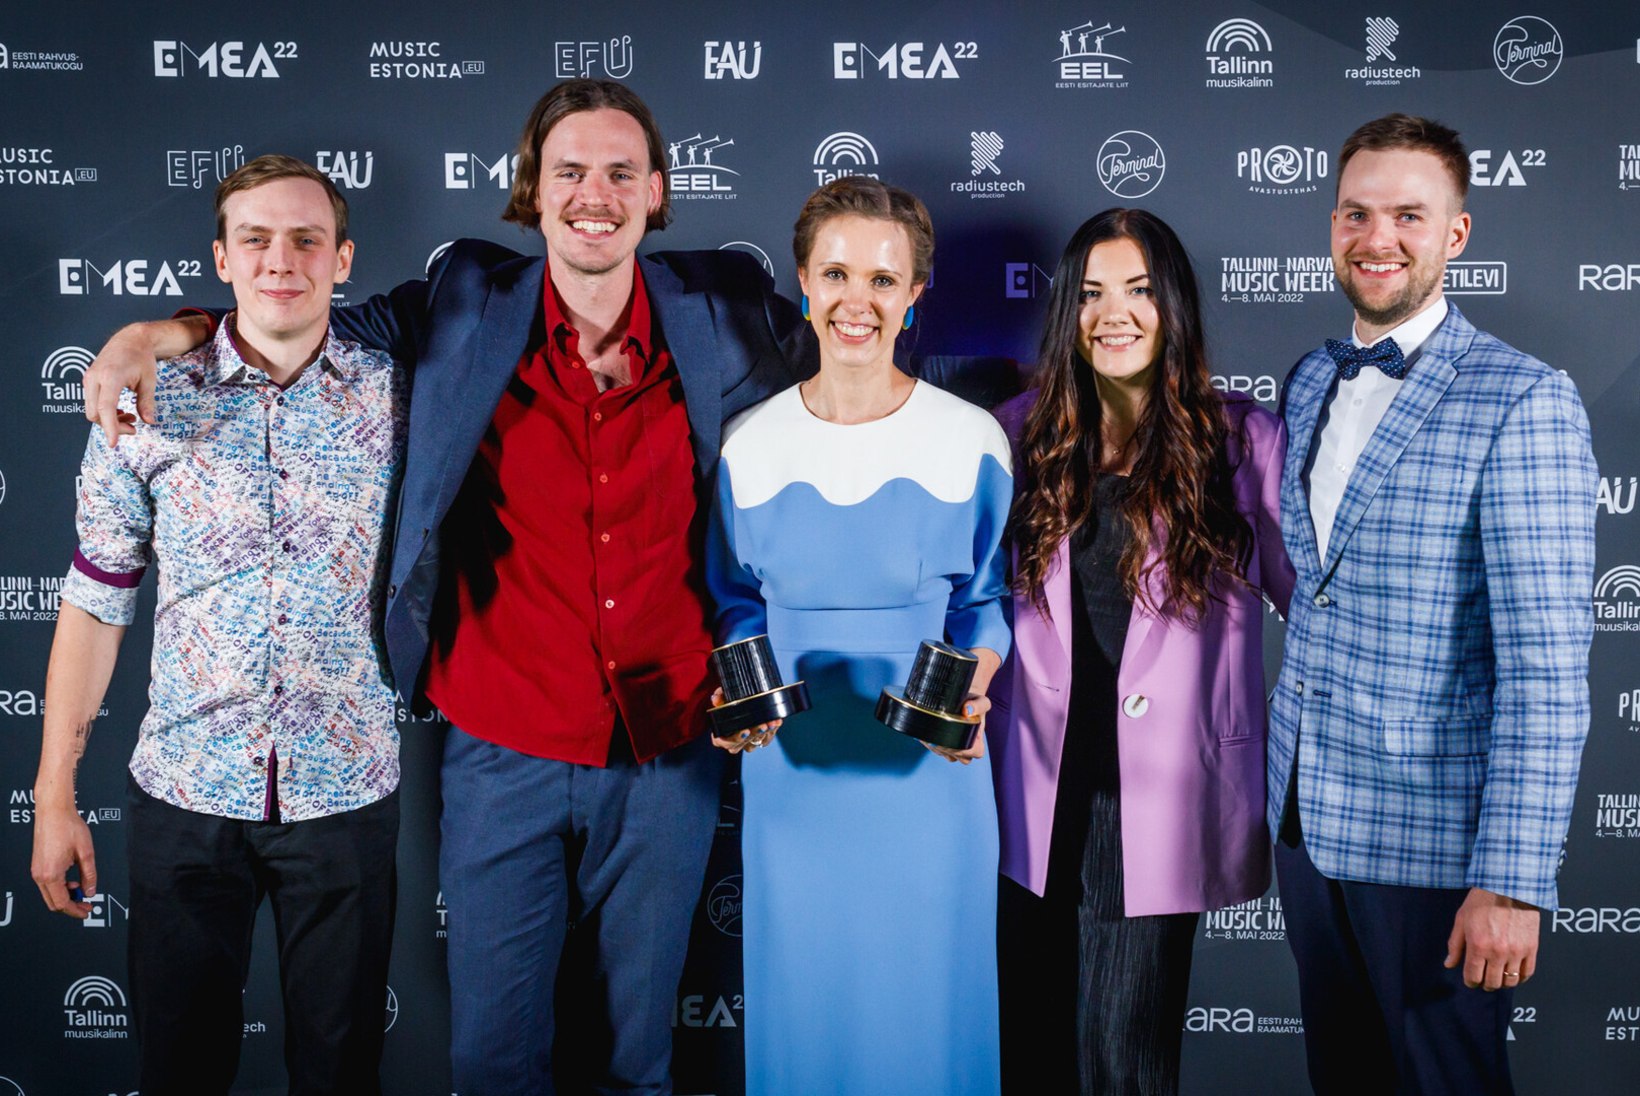 GALERII | Selgusid Eesti muusikaettevõtluse auhindade võitjad!